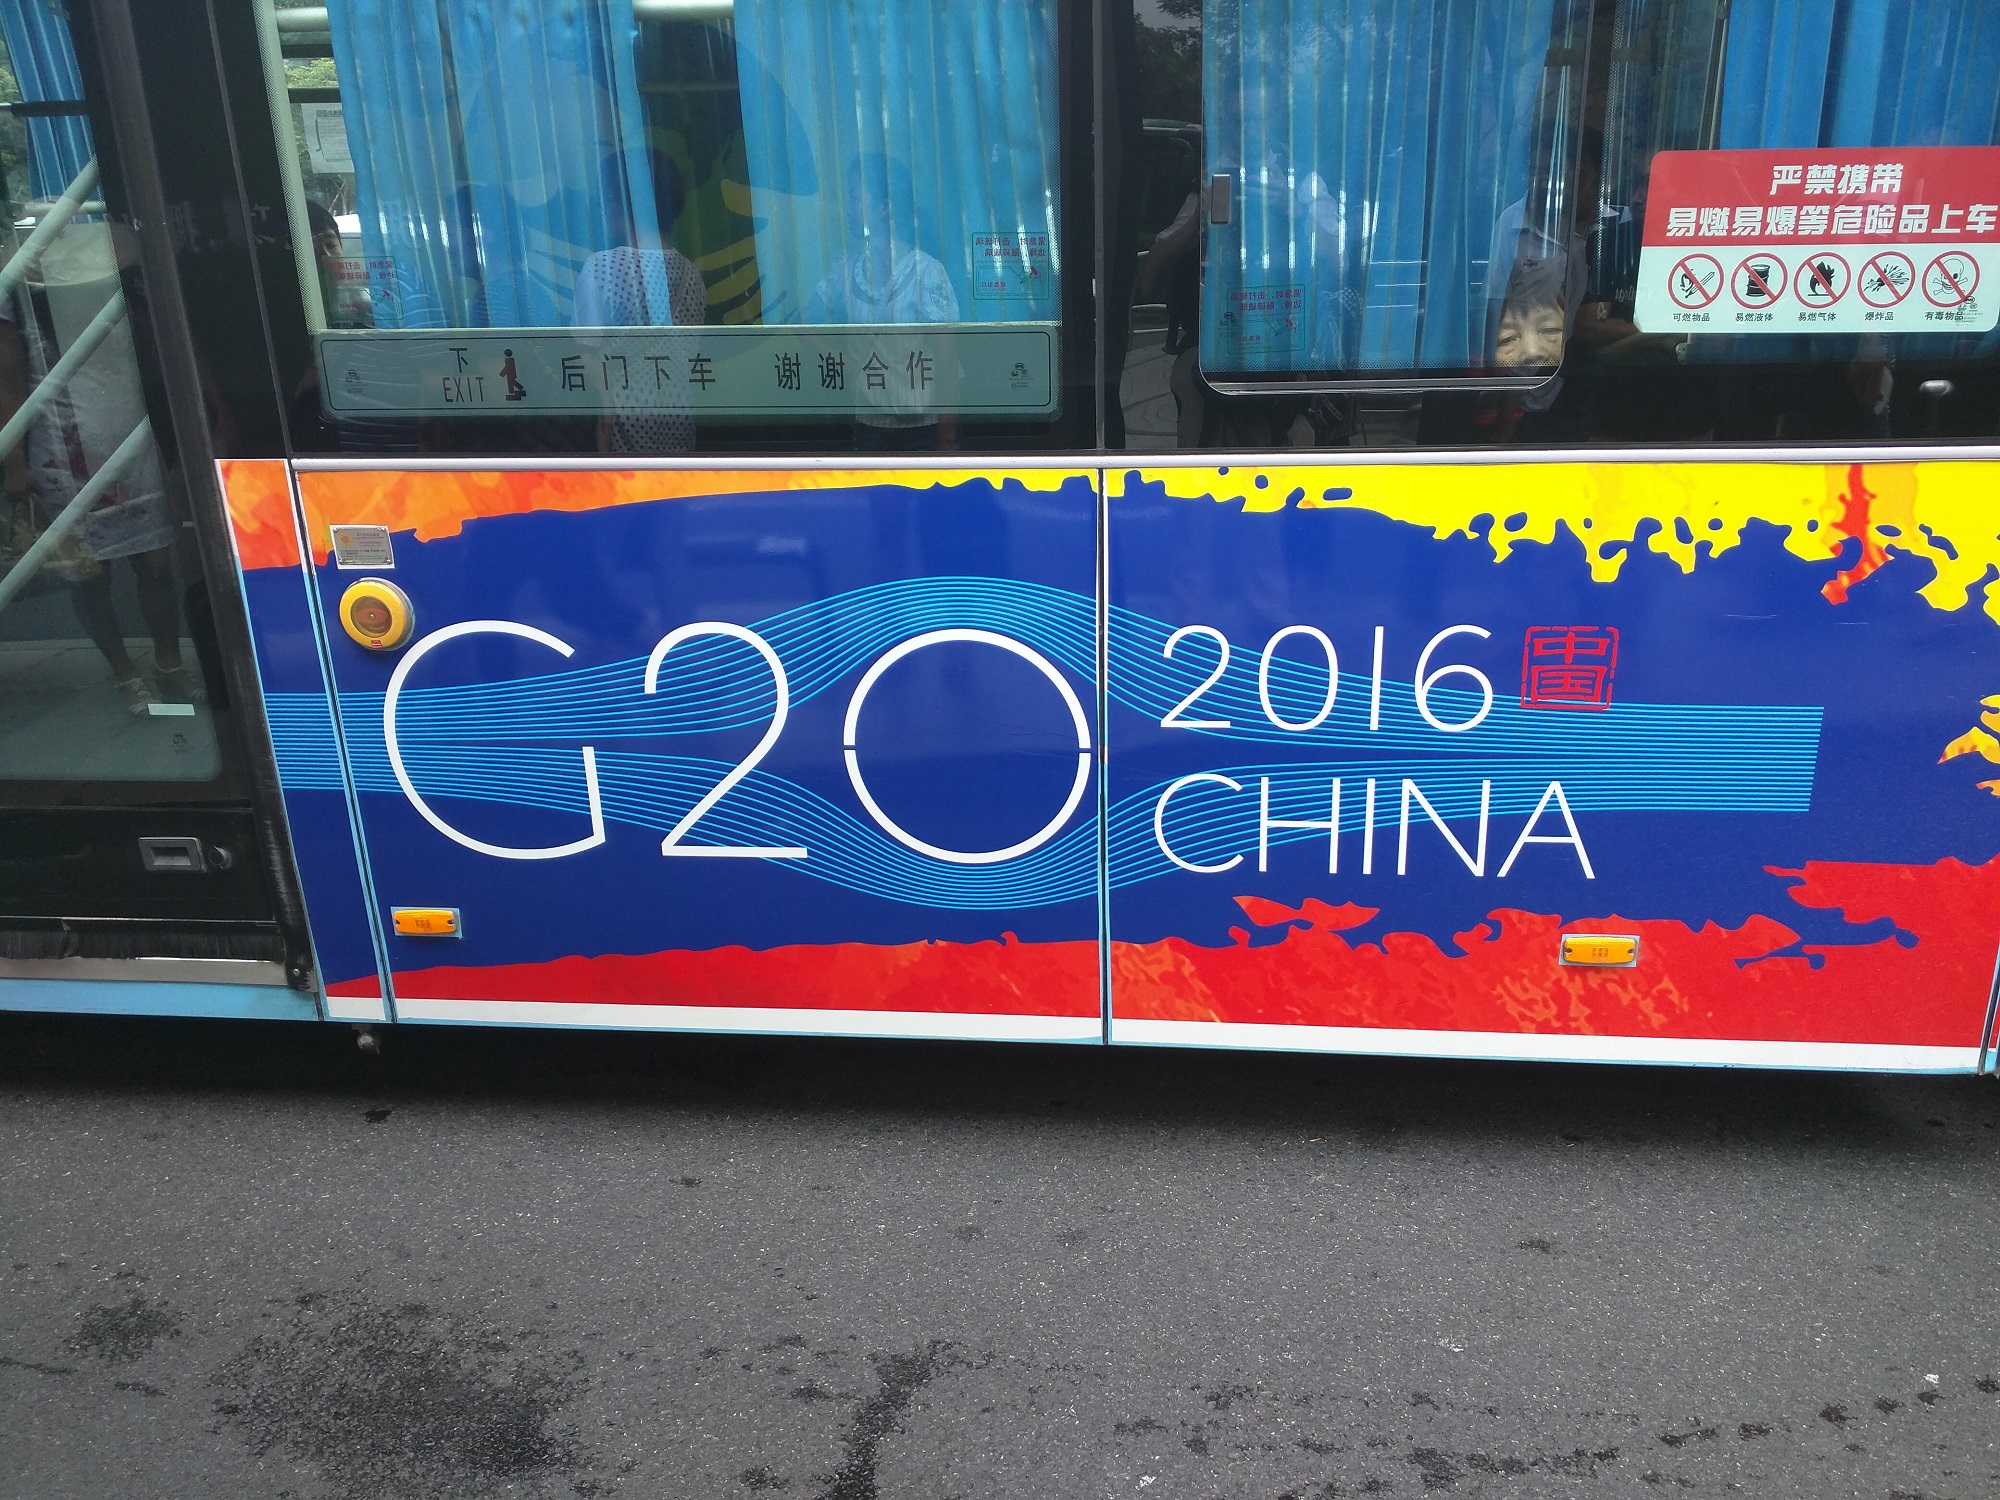 G20 macht auch an Bussen Werbung.